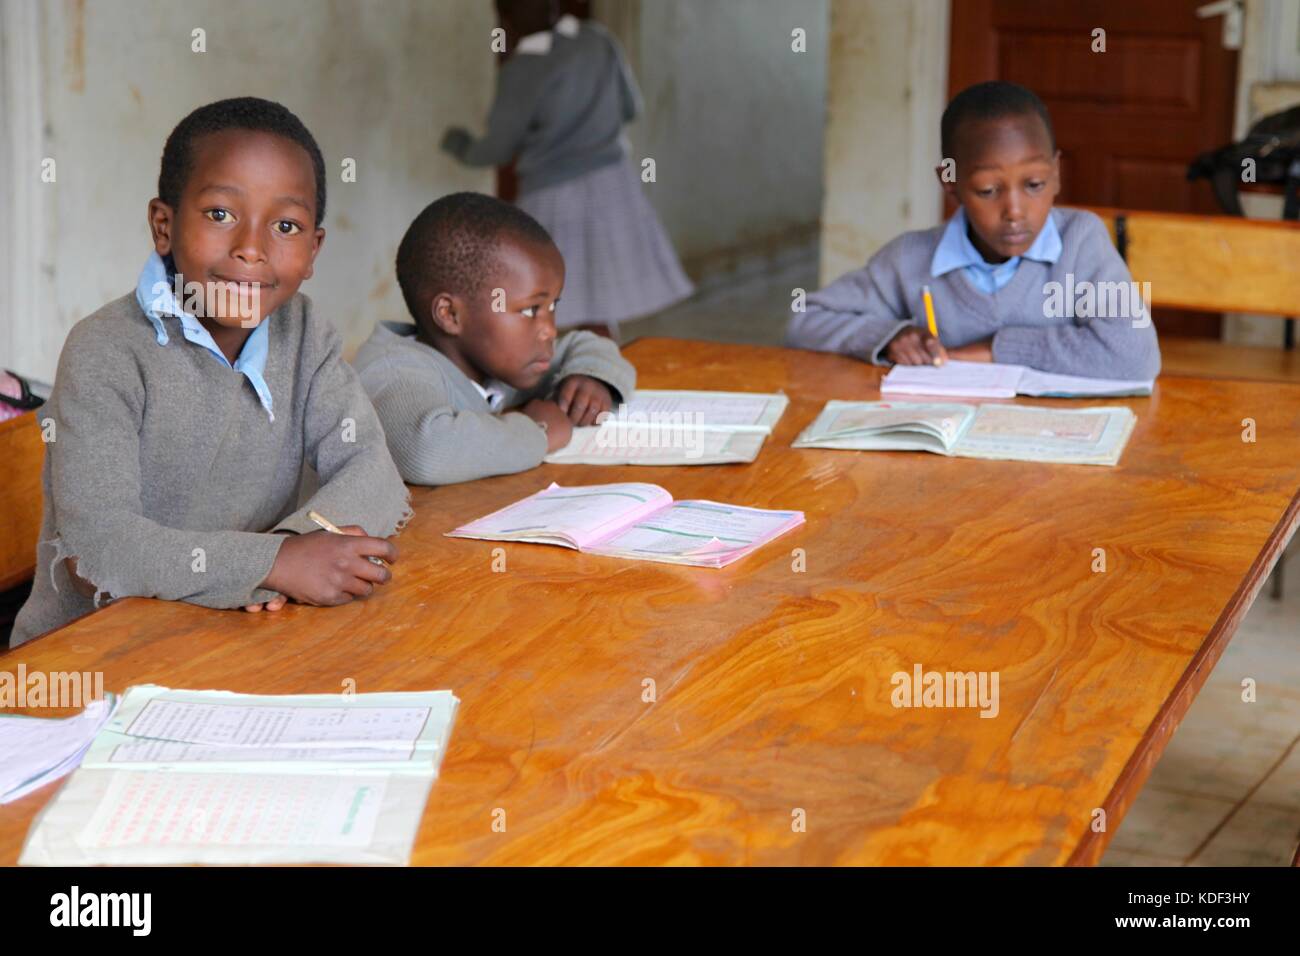 Drei afrikanischen school Jungen Uniformen tragen Sitzen am Schreibtisch studieren, ein Junge schaut in die Kamera lächeln Stockfoto